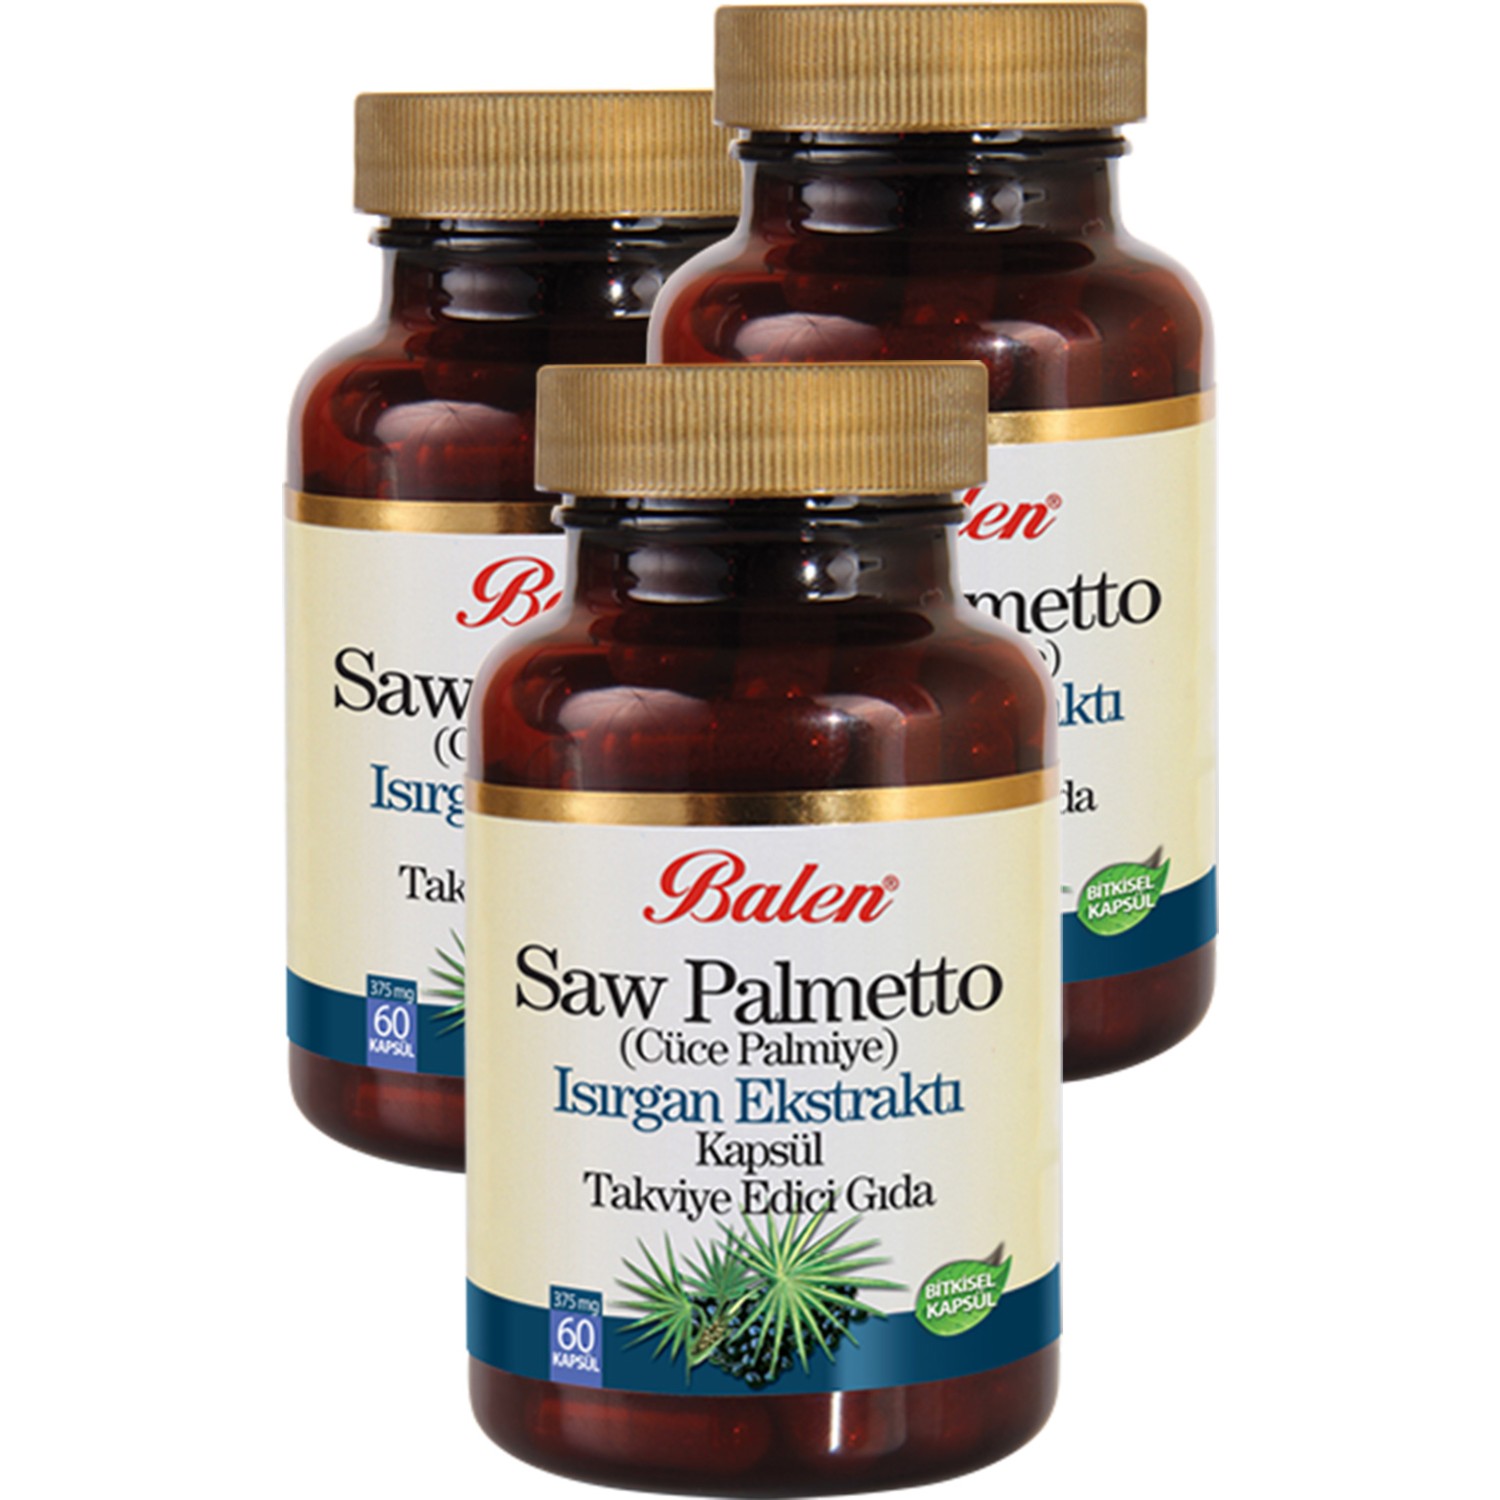 Пищевая добавка Balen сереноа с крапивой и цинком 375 мг, 3 упаковки по 60 капсул havasu nutrition saw palmetto особая сила действия 100 капсул